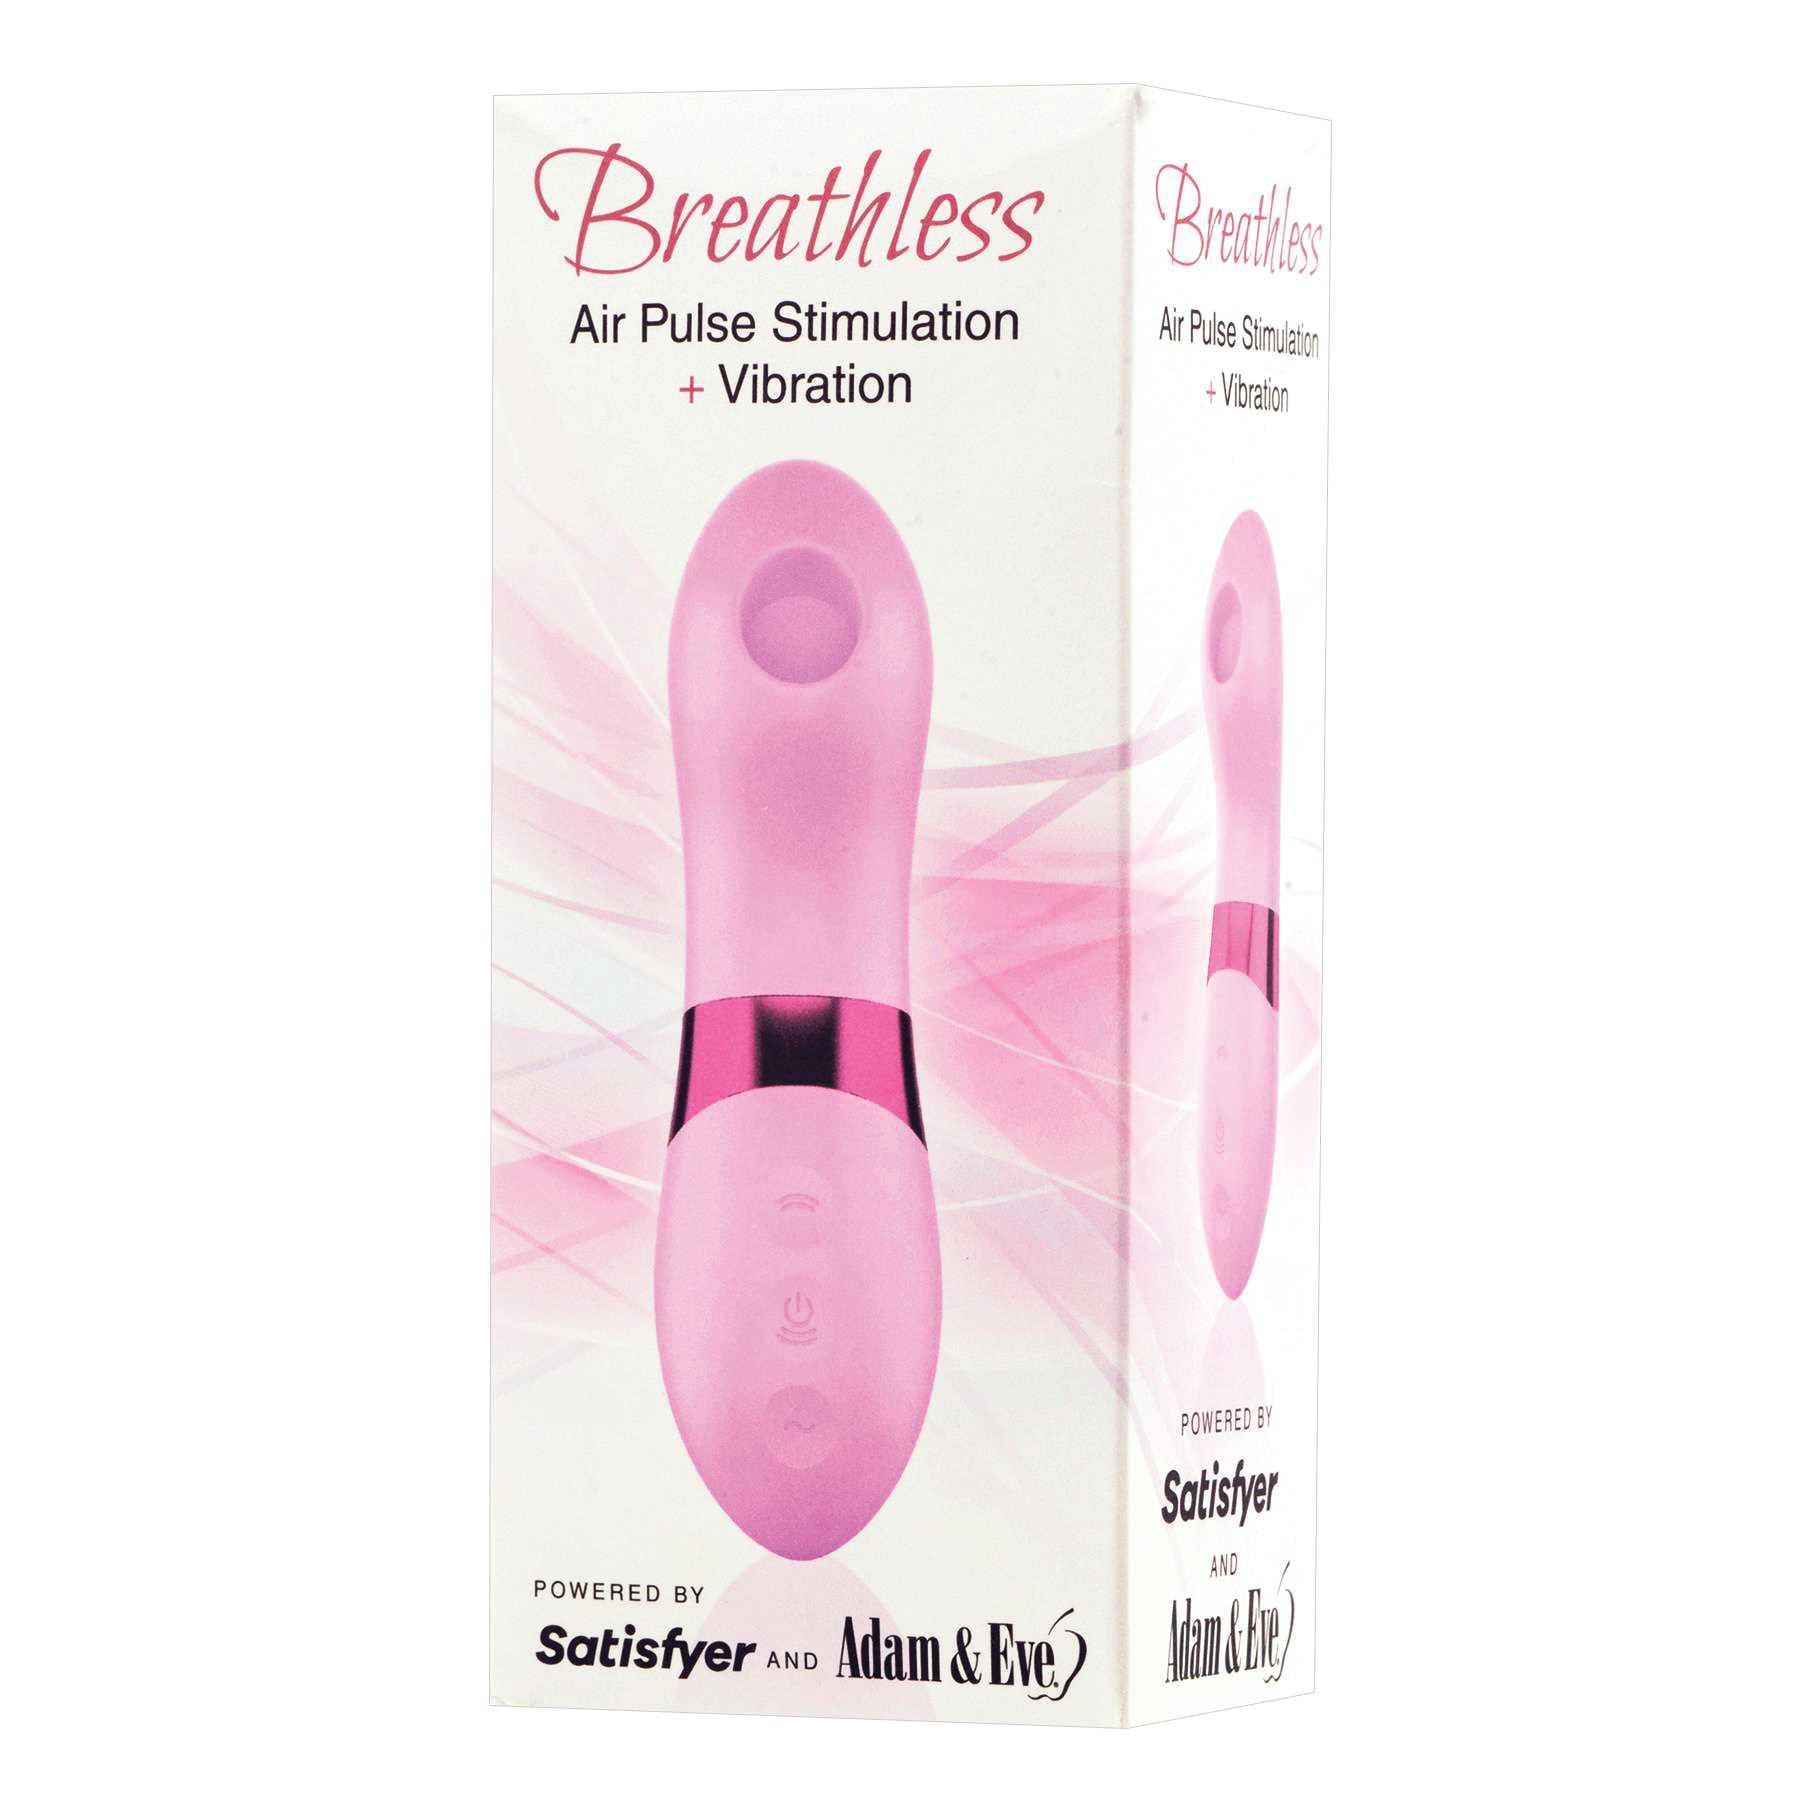 Breathless female massager packaging